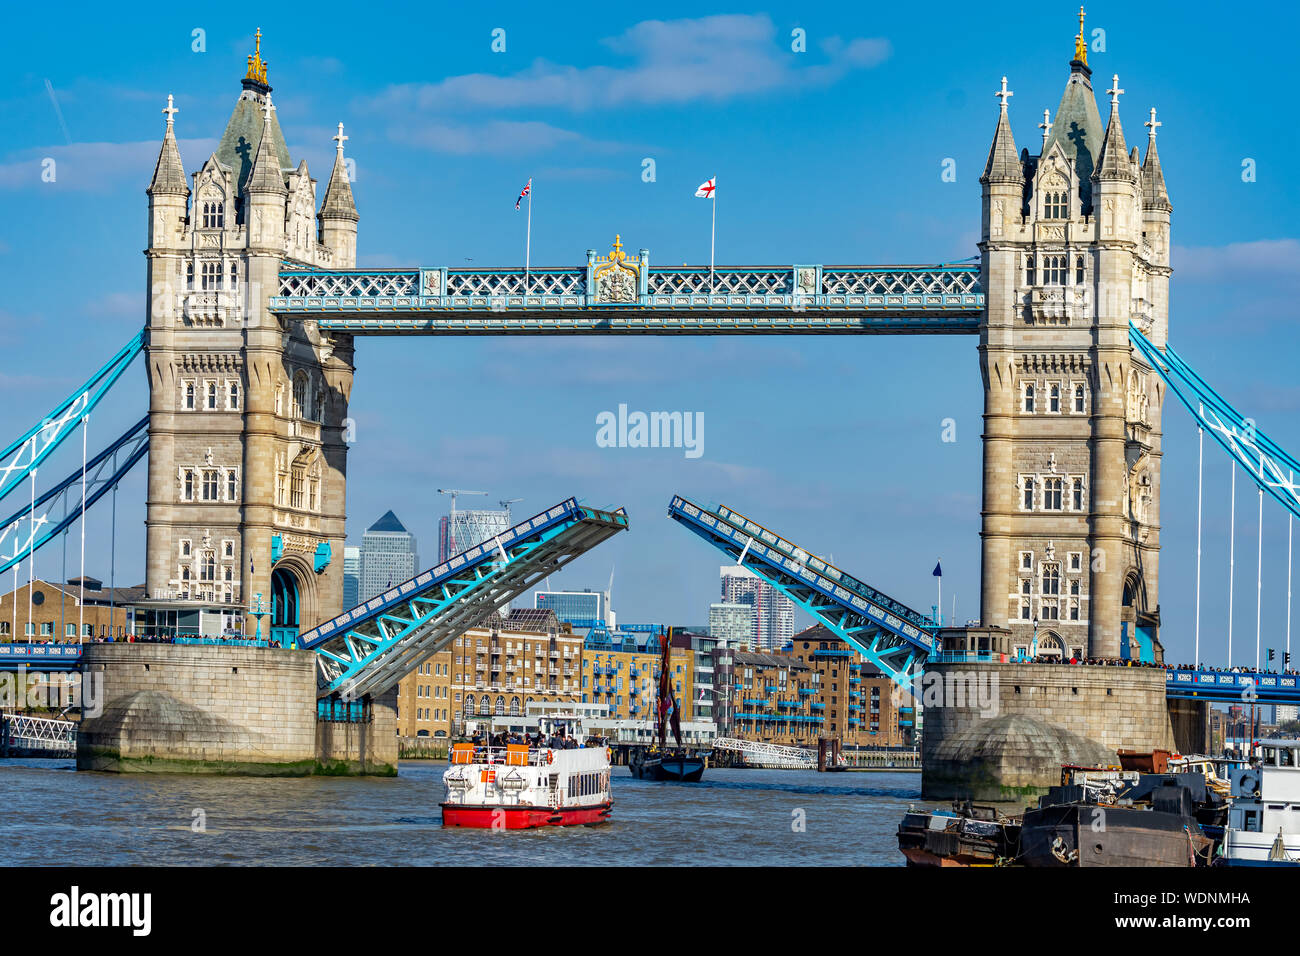 Nahaufnahme eines der berühmten Wahrzeichen von London Tower Bridge mit offenen Toren in England, Großbritannien Stockfoto